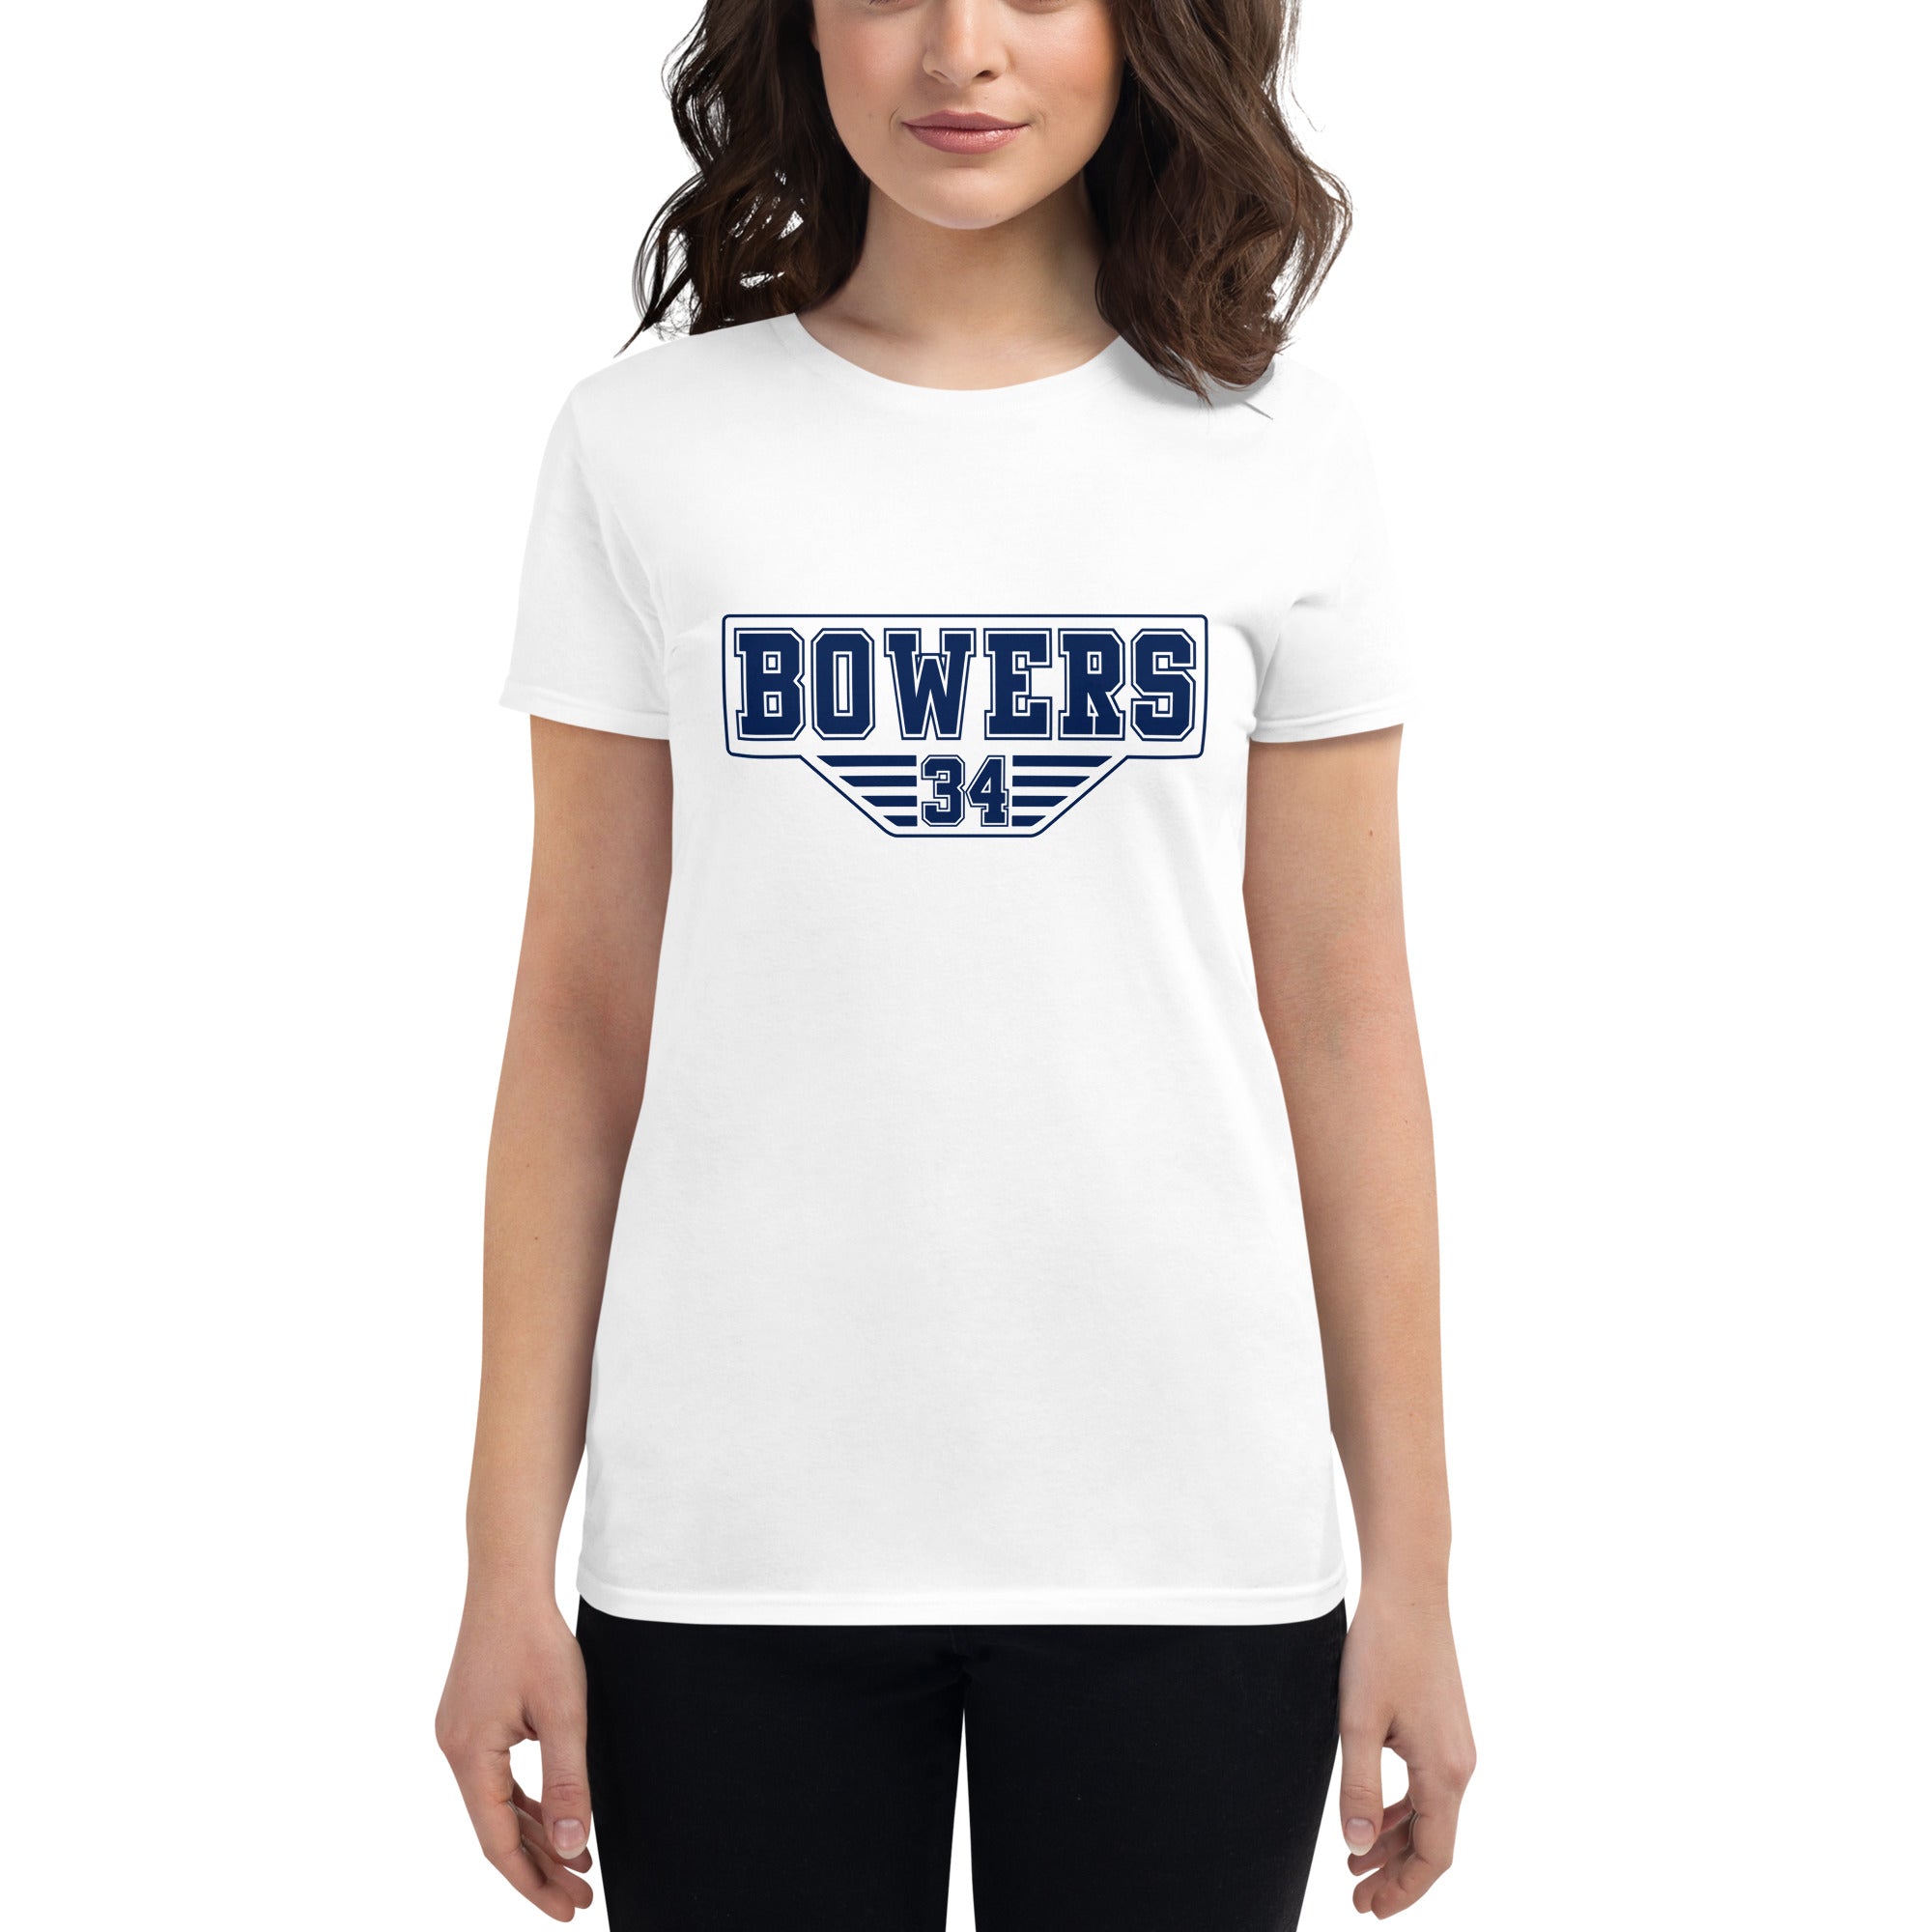 Bowers #34 - Women's short sleeve t-shirt